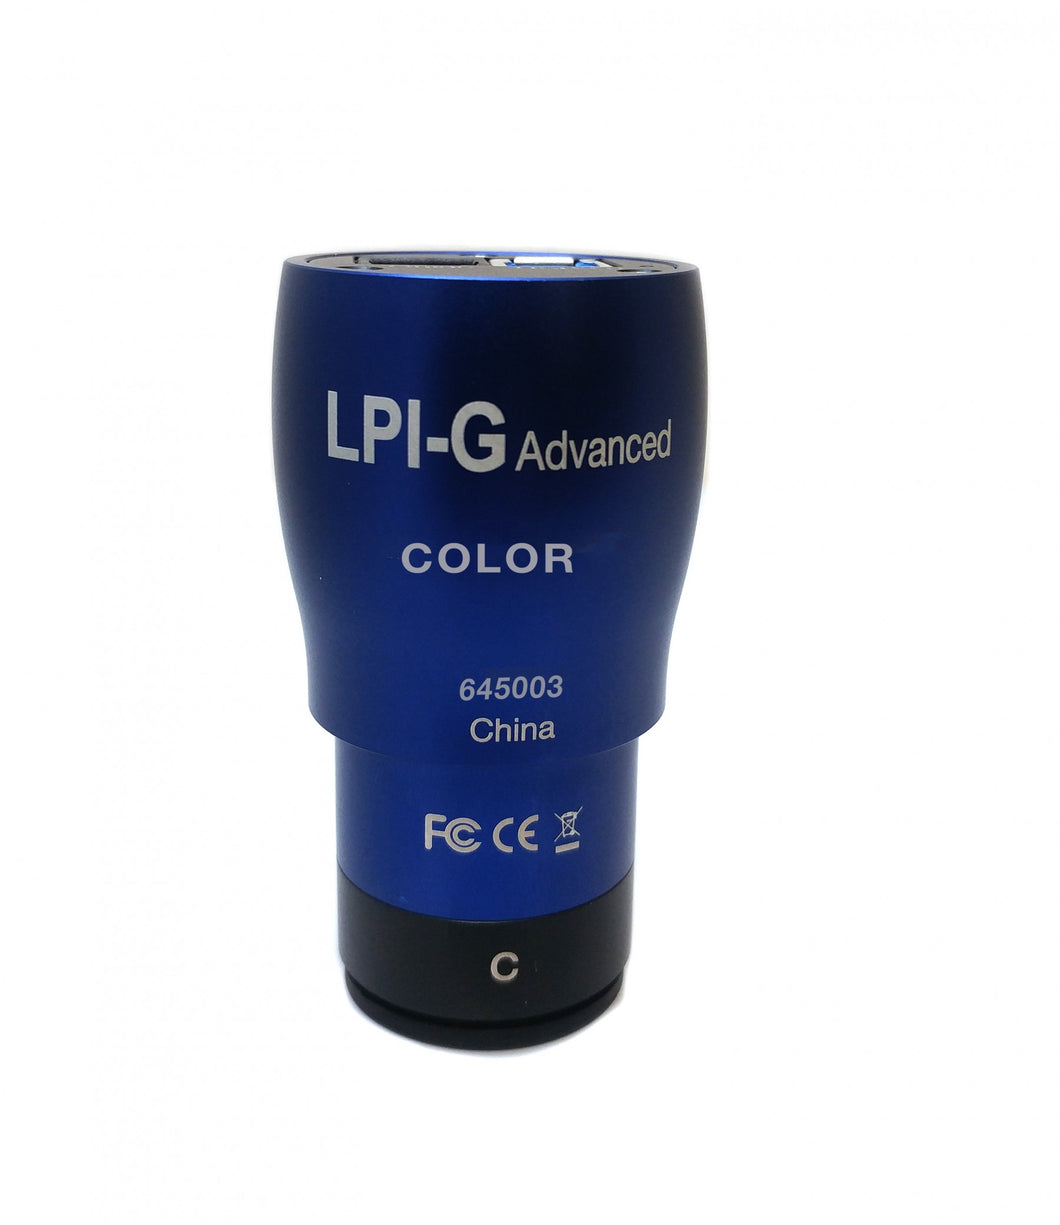 LPI-G Advanced Camera - Color (645003)